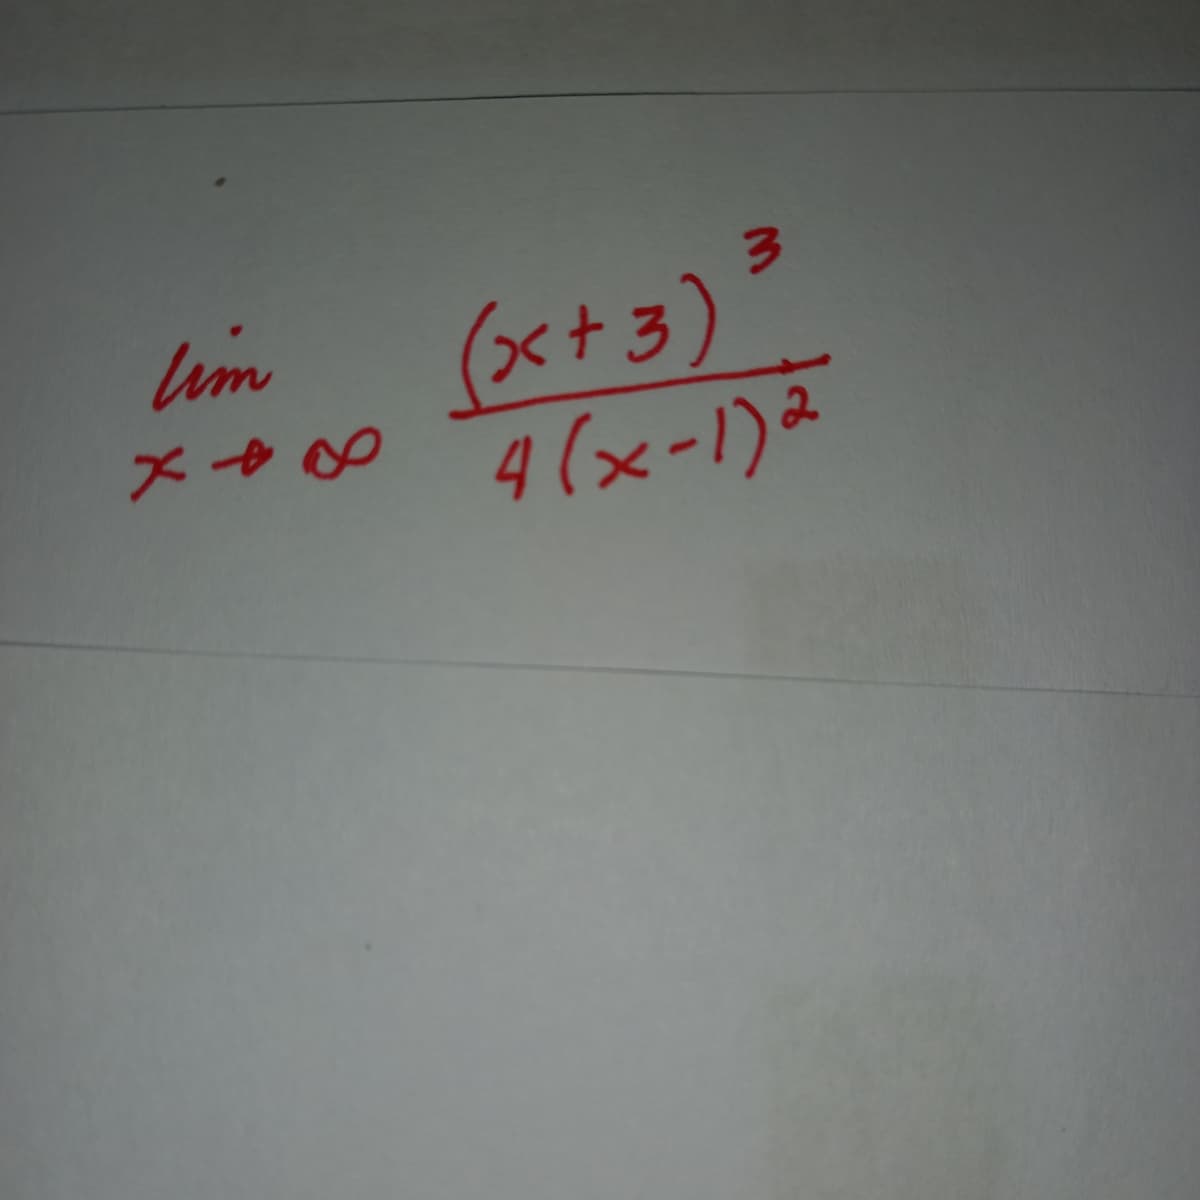 im
(x+3)"
メ→0 4(x-1)。
